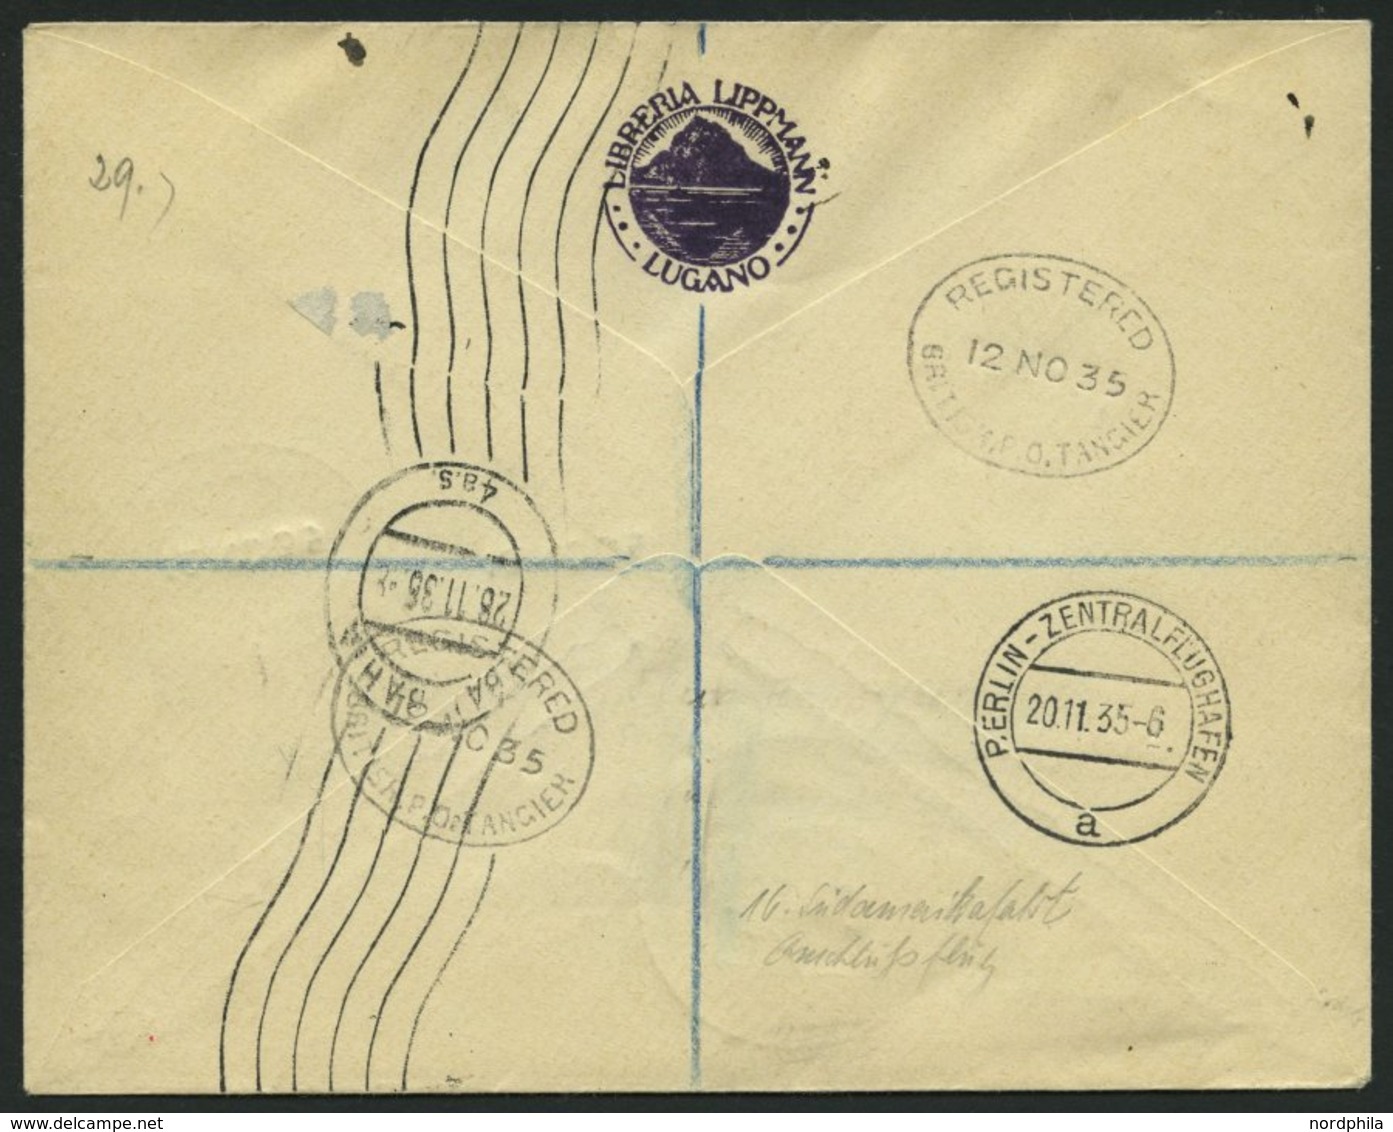 ZULEITUNGSPOST 329Ba BRIEF, Britische Post In Marokko (Tanger): 1935, 16. Südamerikafahrt, Nachbringeflug Ab Berlin, Ein - Zeppelins